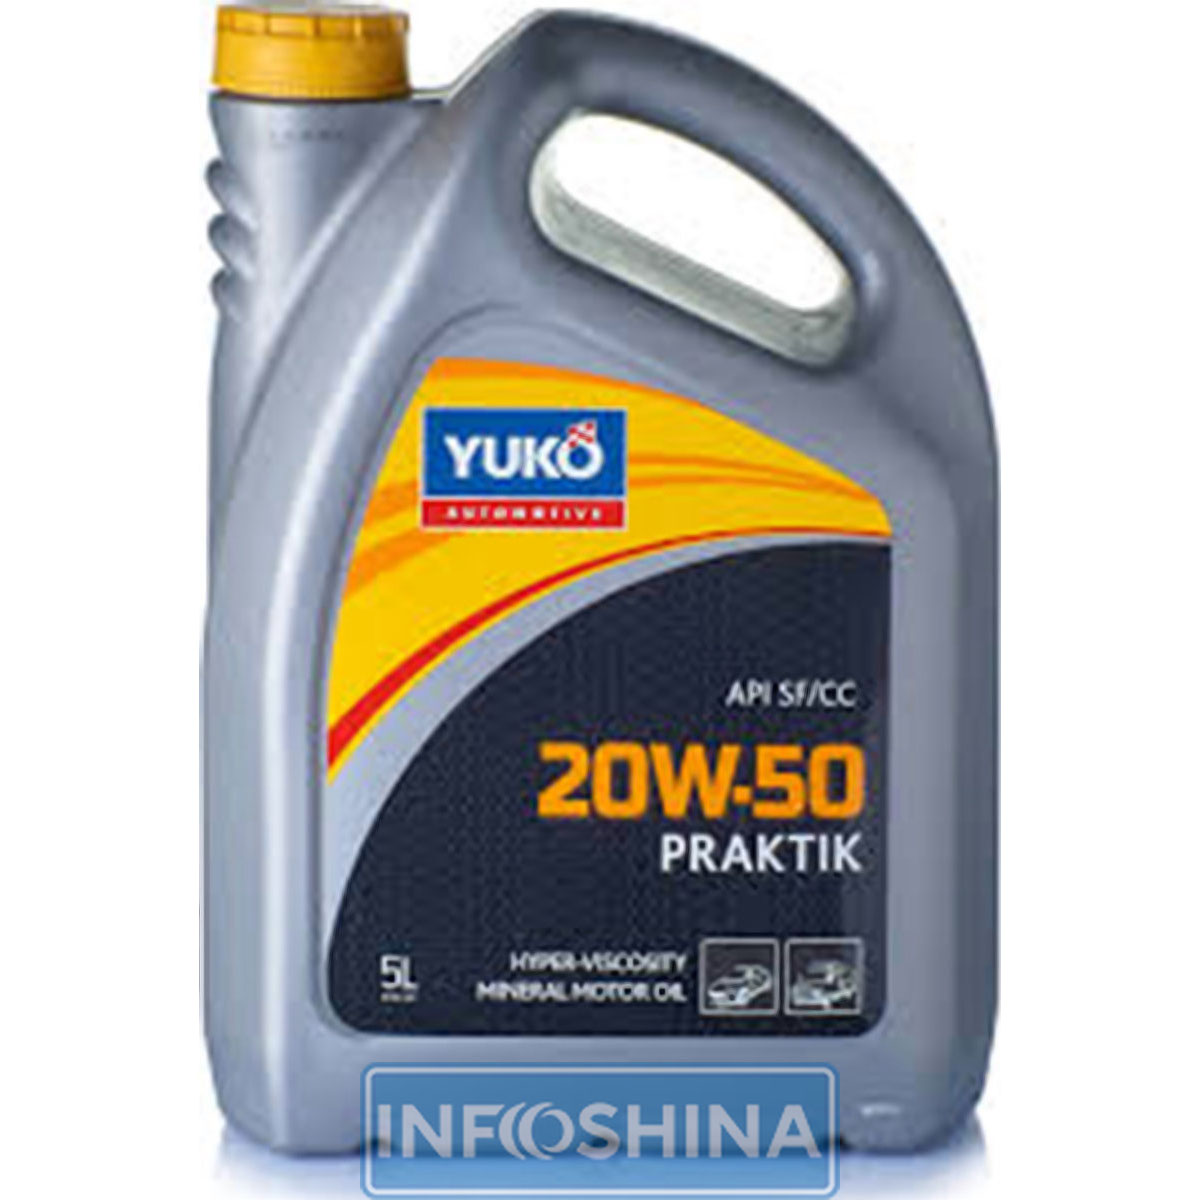 Купить масло Yuko PRAKTIK 20W-50 (5л)